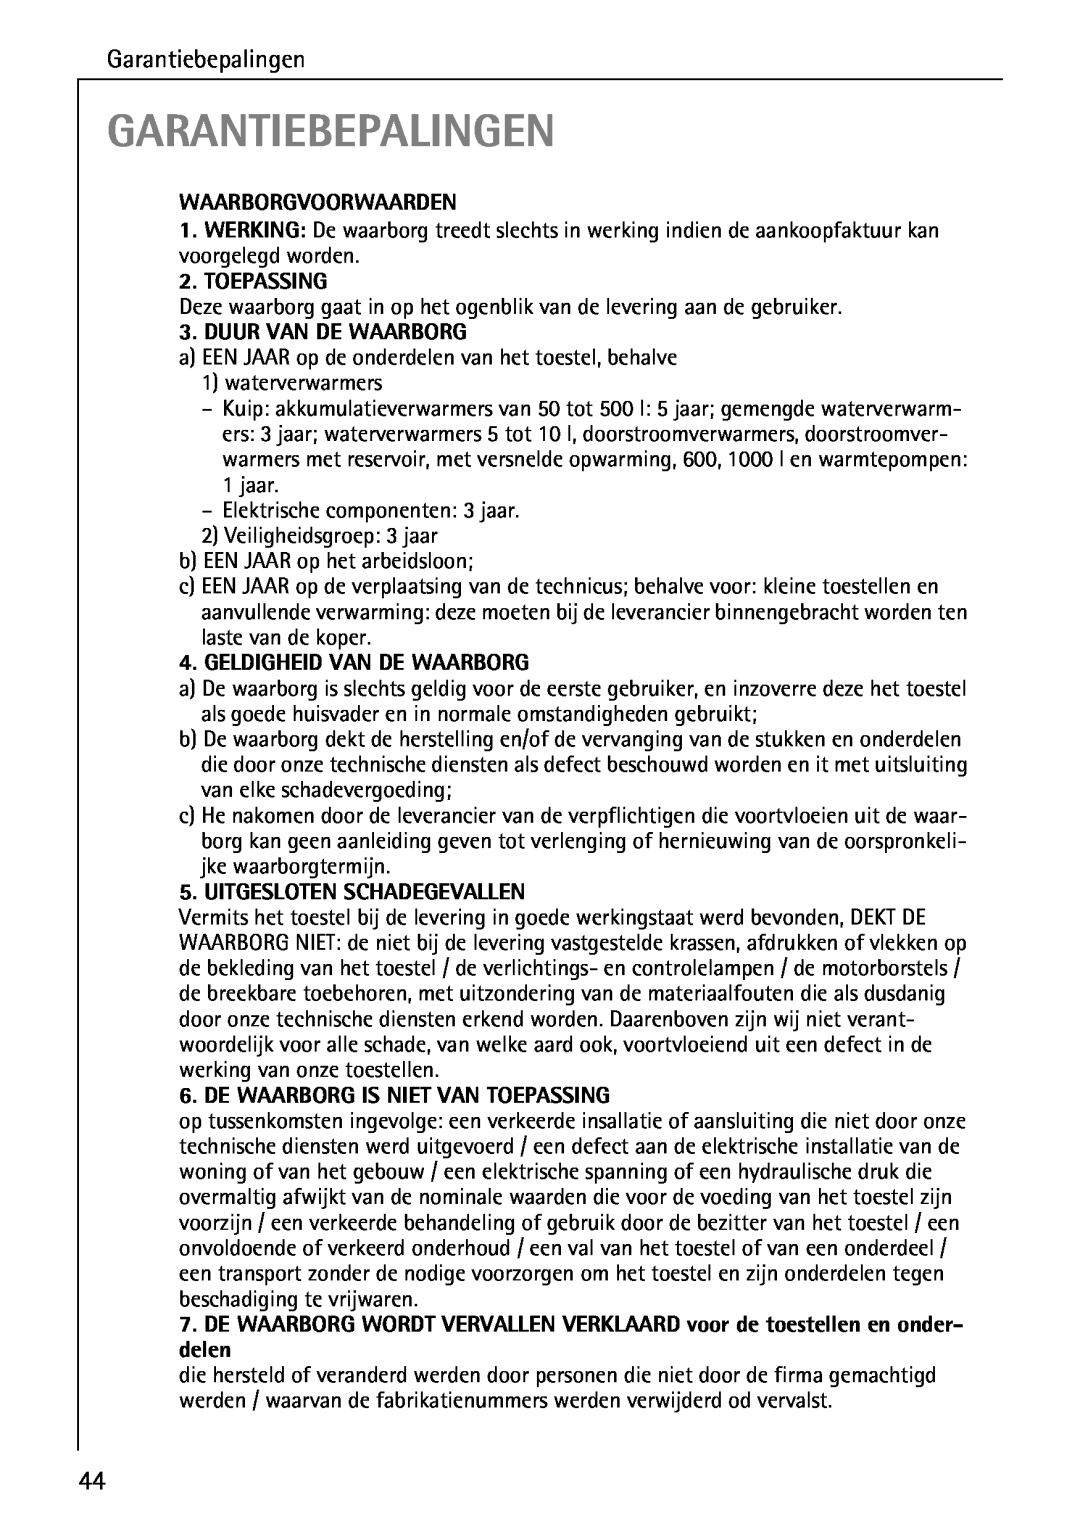 AEG 80800 manual Garantiebepalingen, Waarborgvoorwaarden, Toepassing, Duur Van De Waarborg, Geldigheid Van De Waarborg 